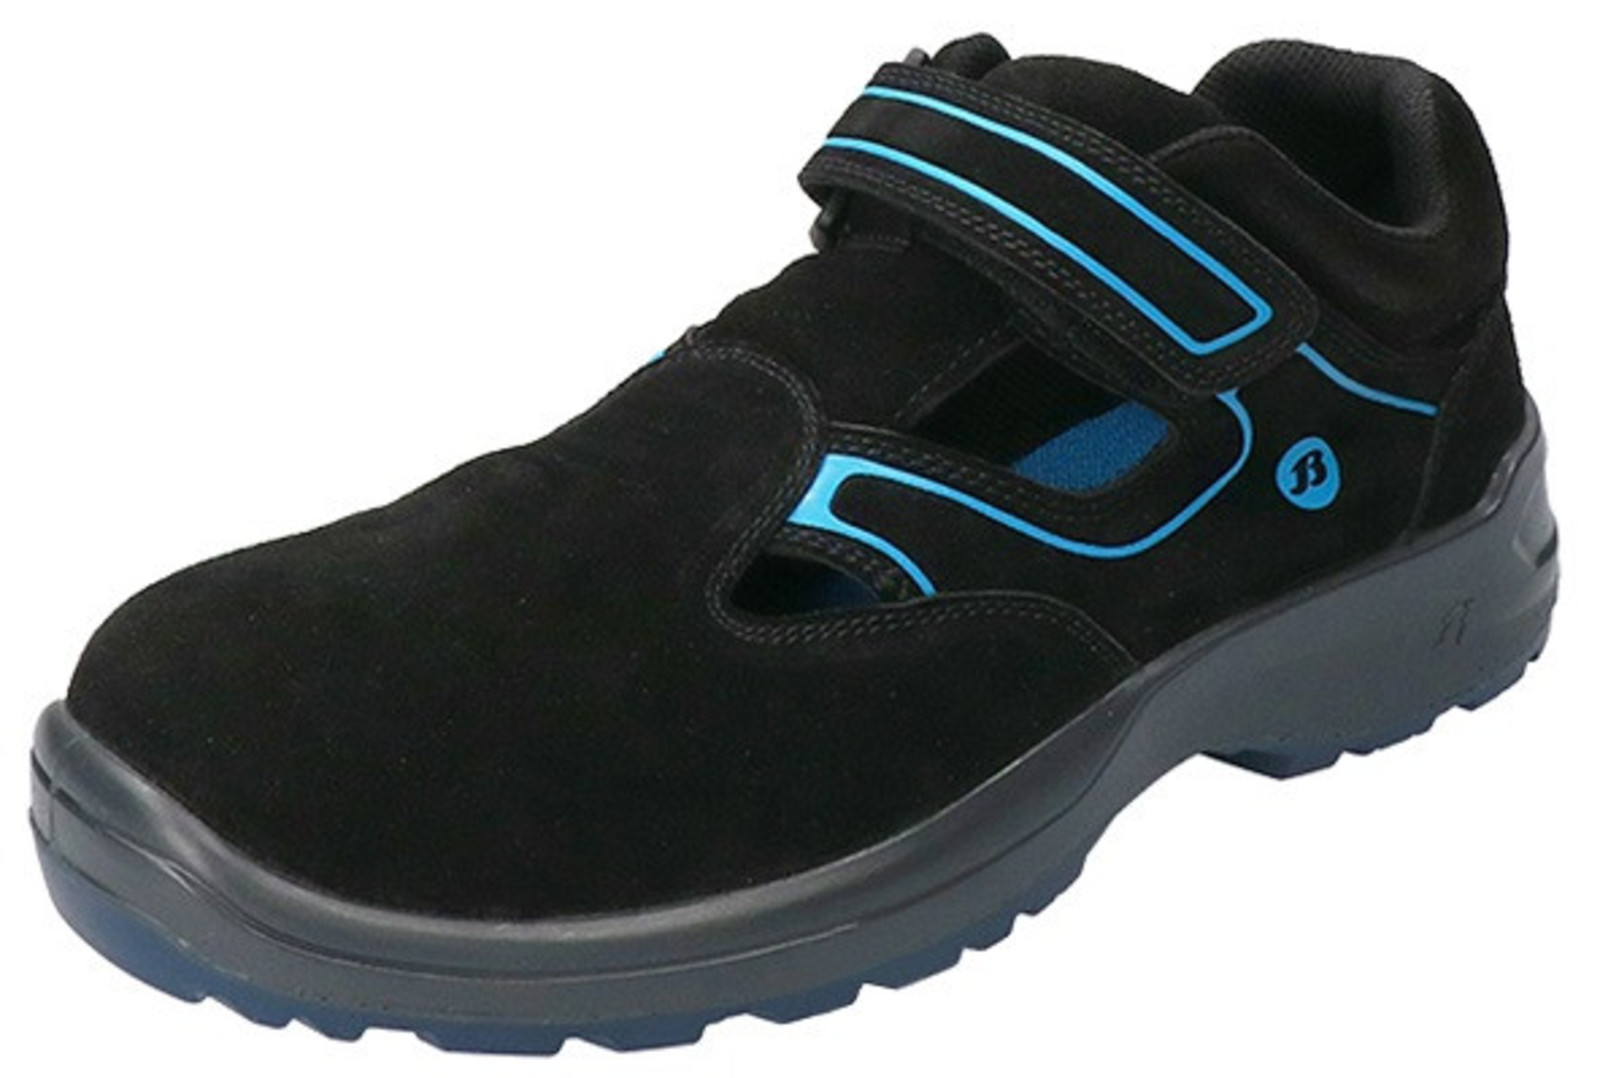 Bezpečnostné sandále Baťa Falcon ESD S1 - veľkosť: 44, farba: čierna